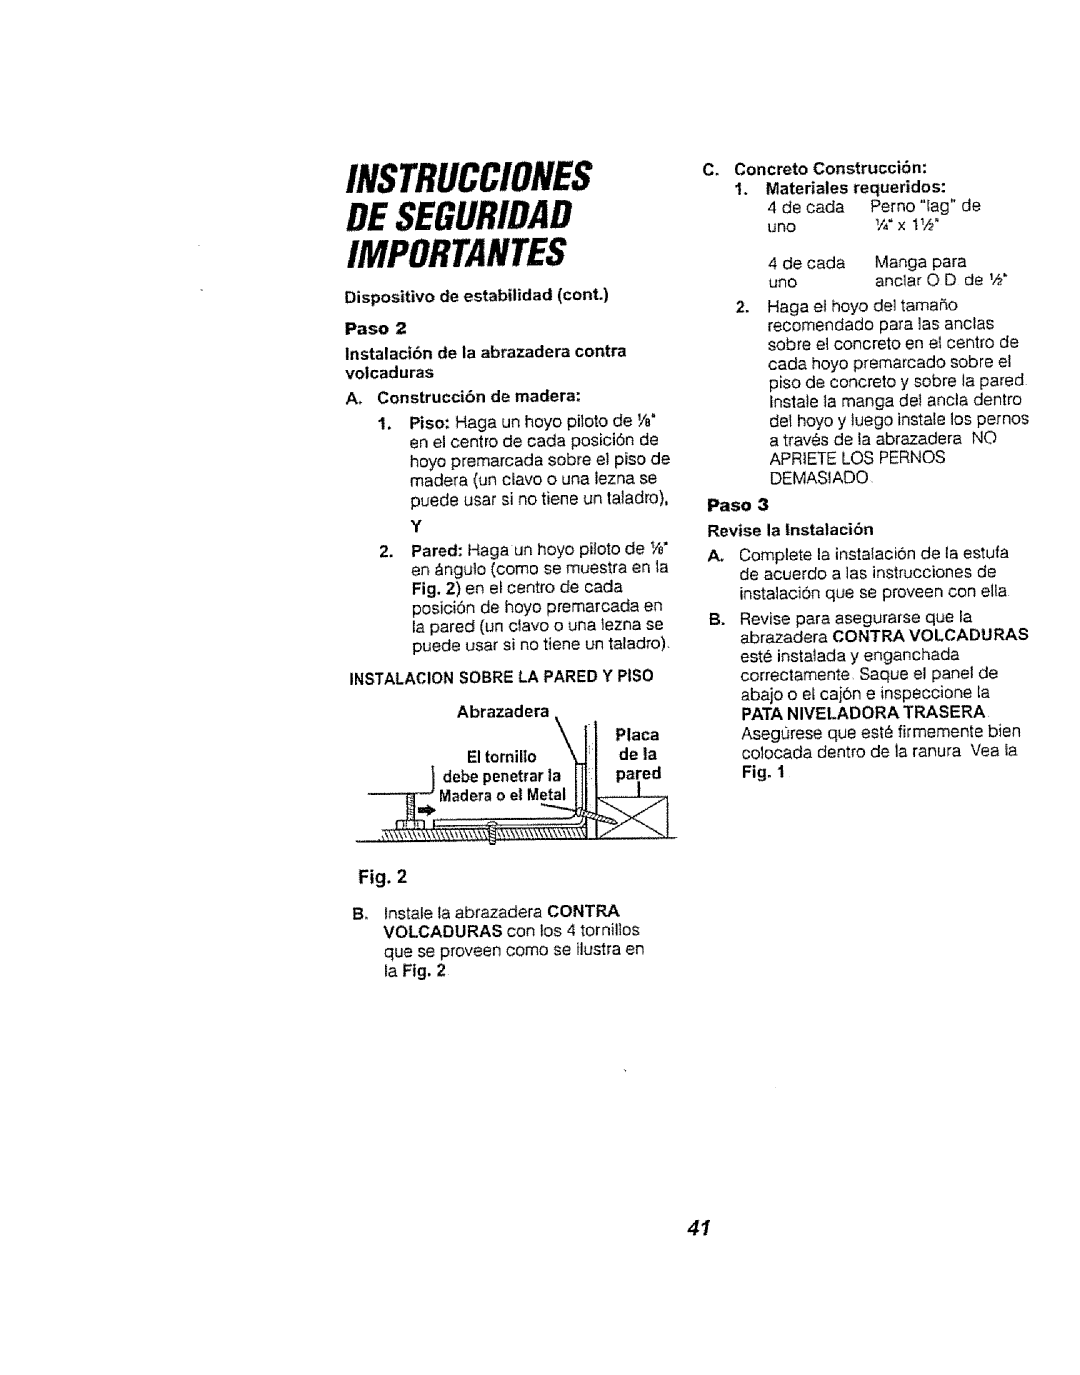 Kenmore 911.94759 manual Instrucciones De Seguridad Importantes, Materiales requeridos, Paso, A. Construccibn de madera 